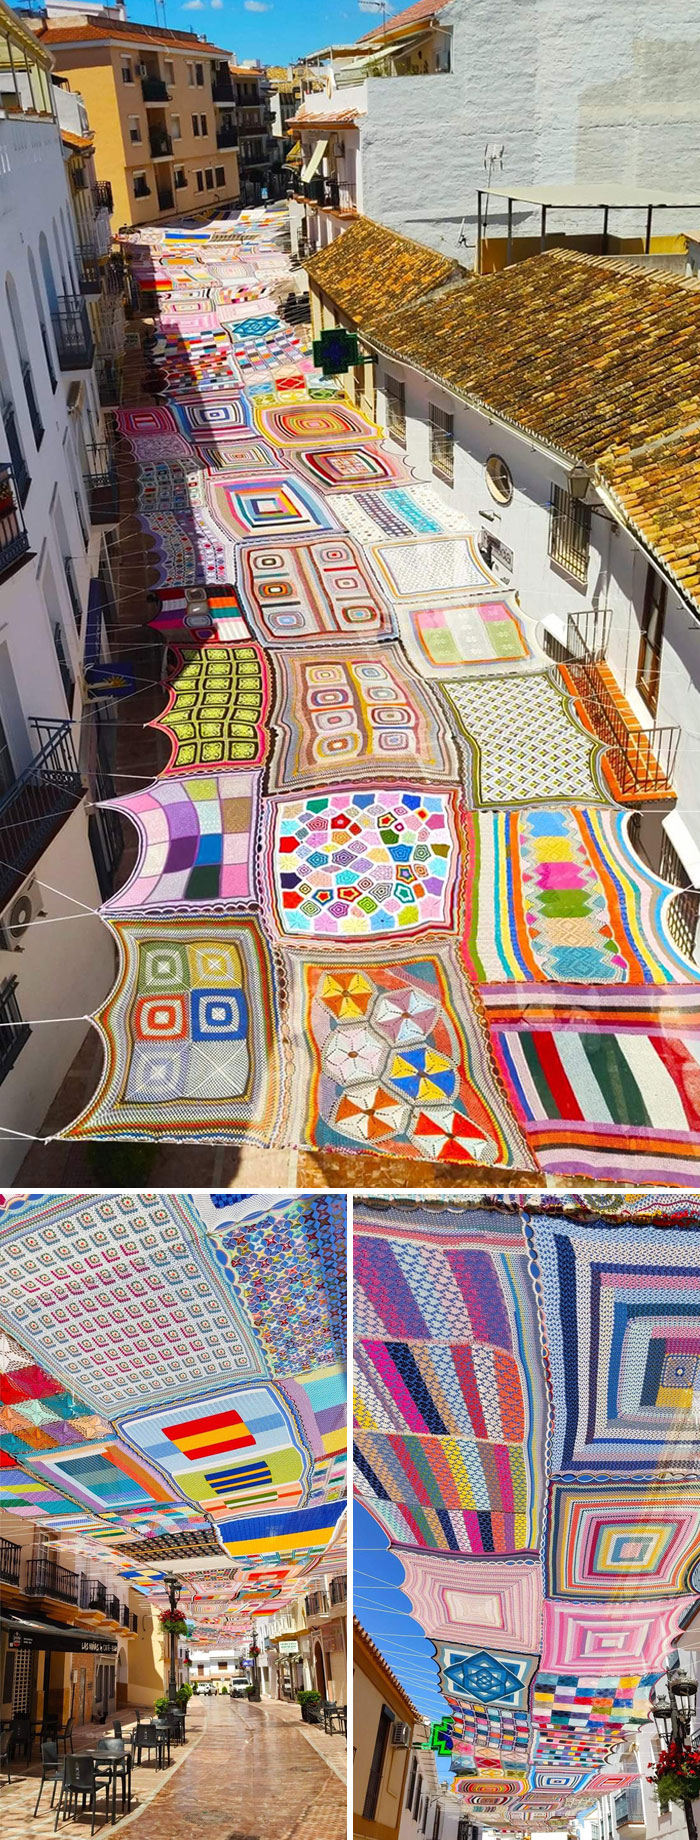 Combatiendo el calor: Artistas españoles decoran el distrito comercial de Málaga con un colorido toldo de ganchillo